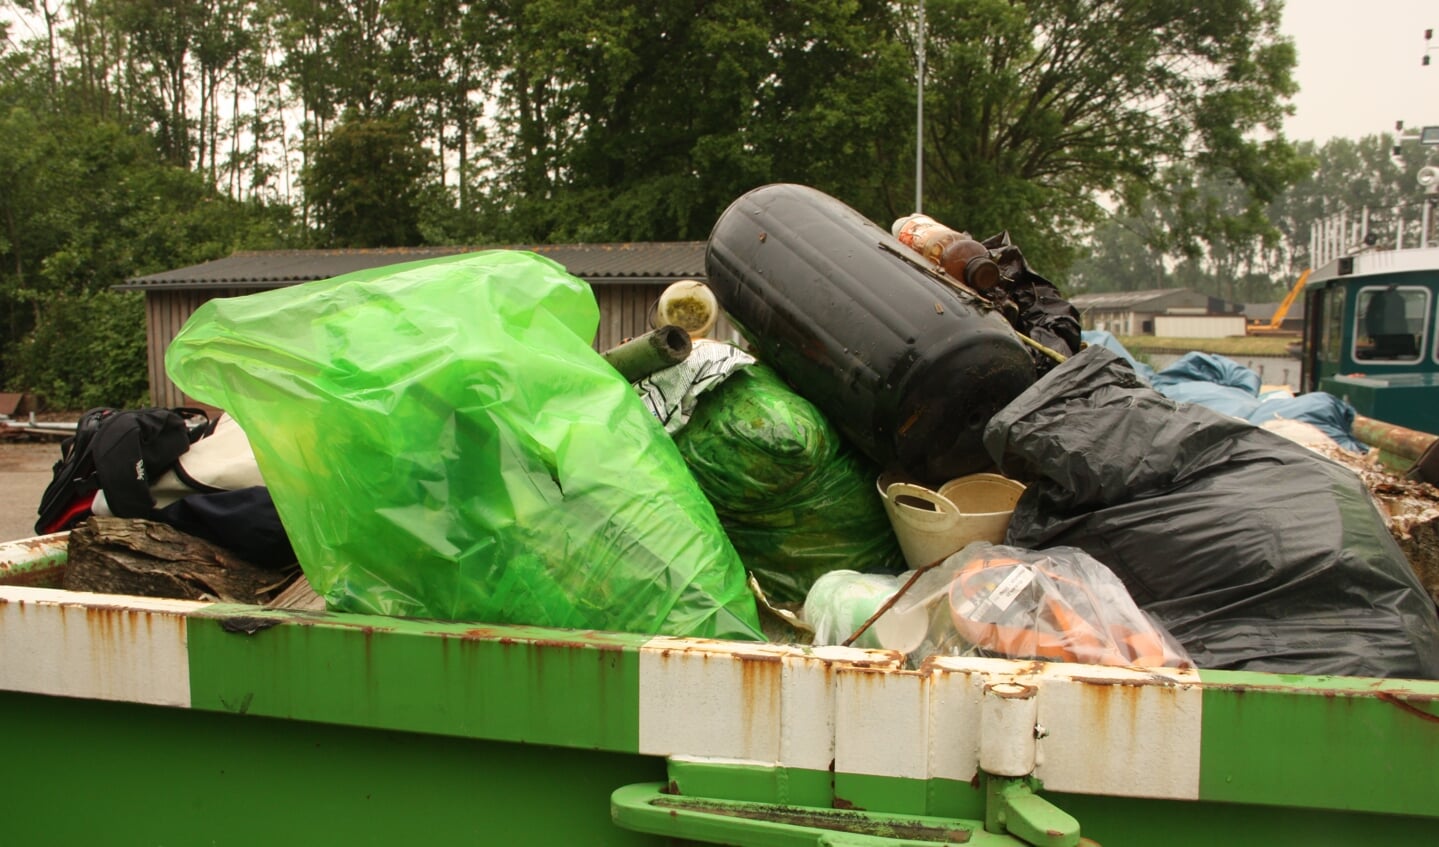 Aan het einde van de schoonmaakactie lag er bij benadering vijf kuub afval in de container, dat achteraf wordt gescheiden.